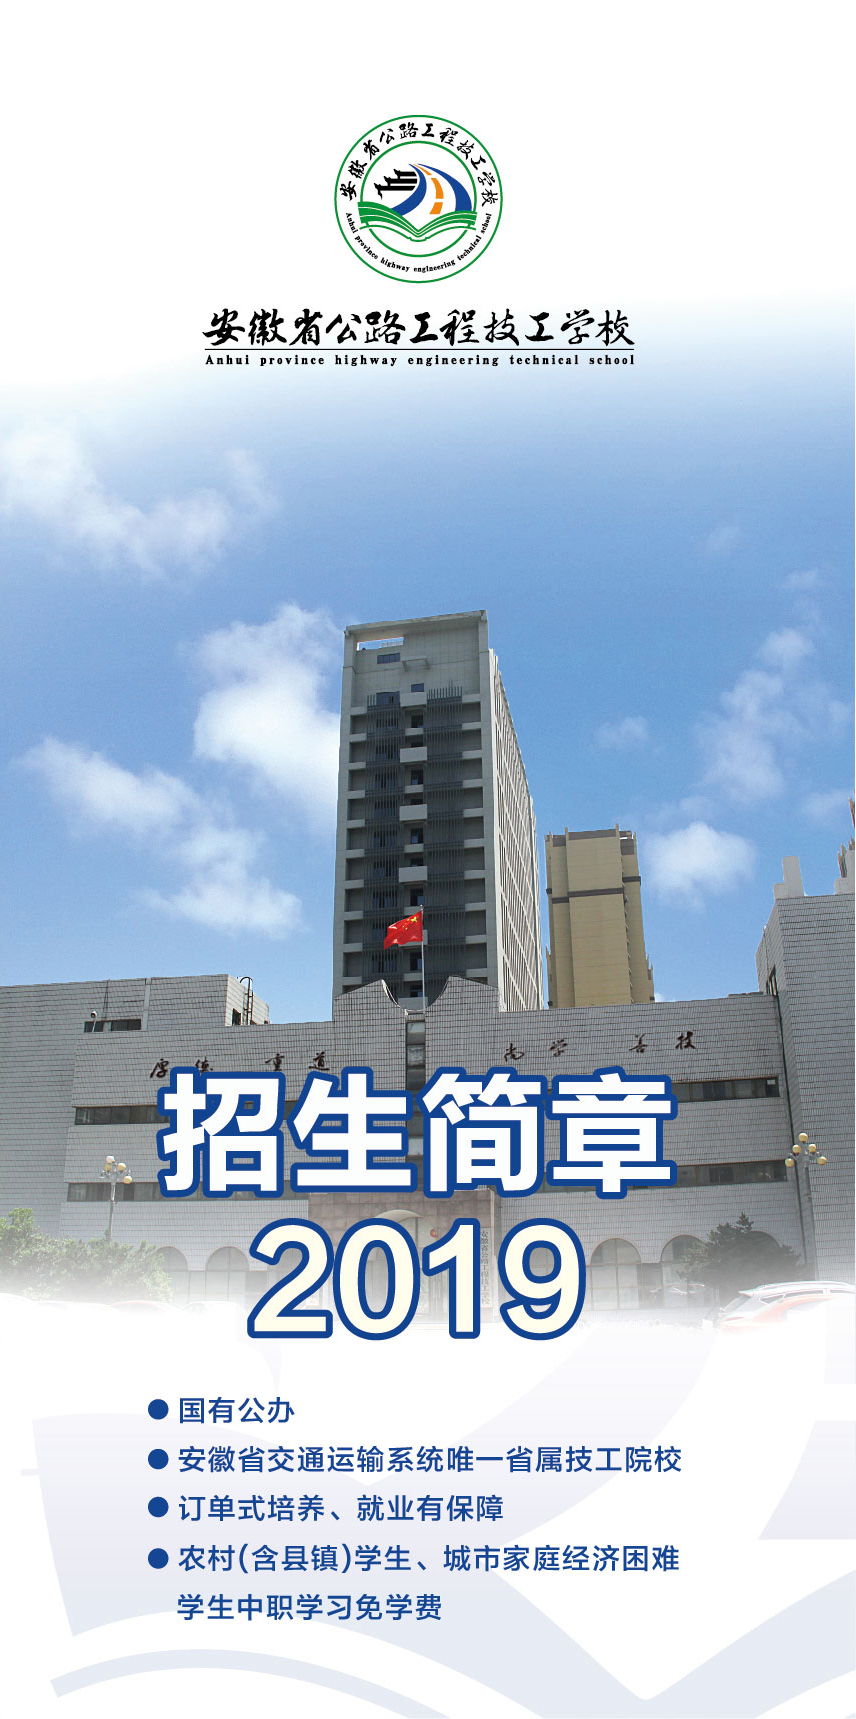 2019公路技校 (1).jpg